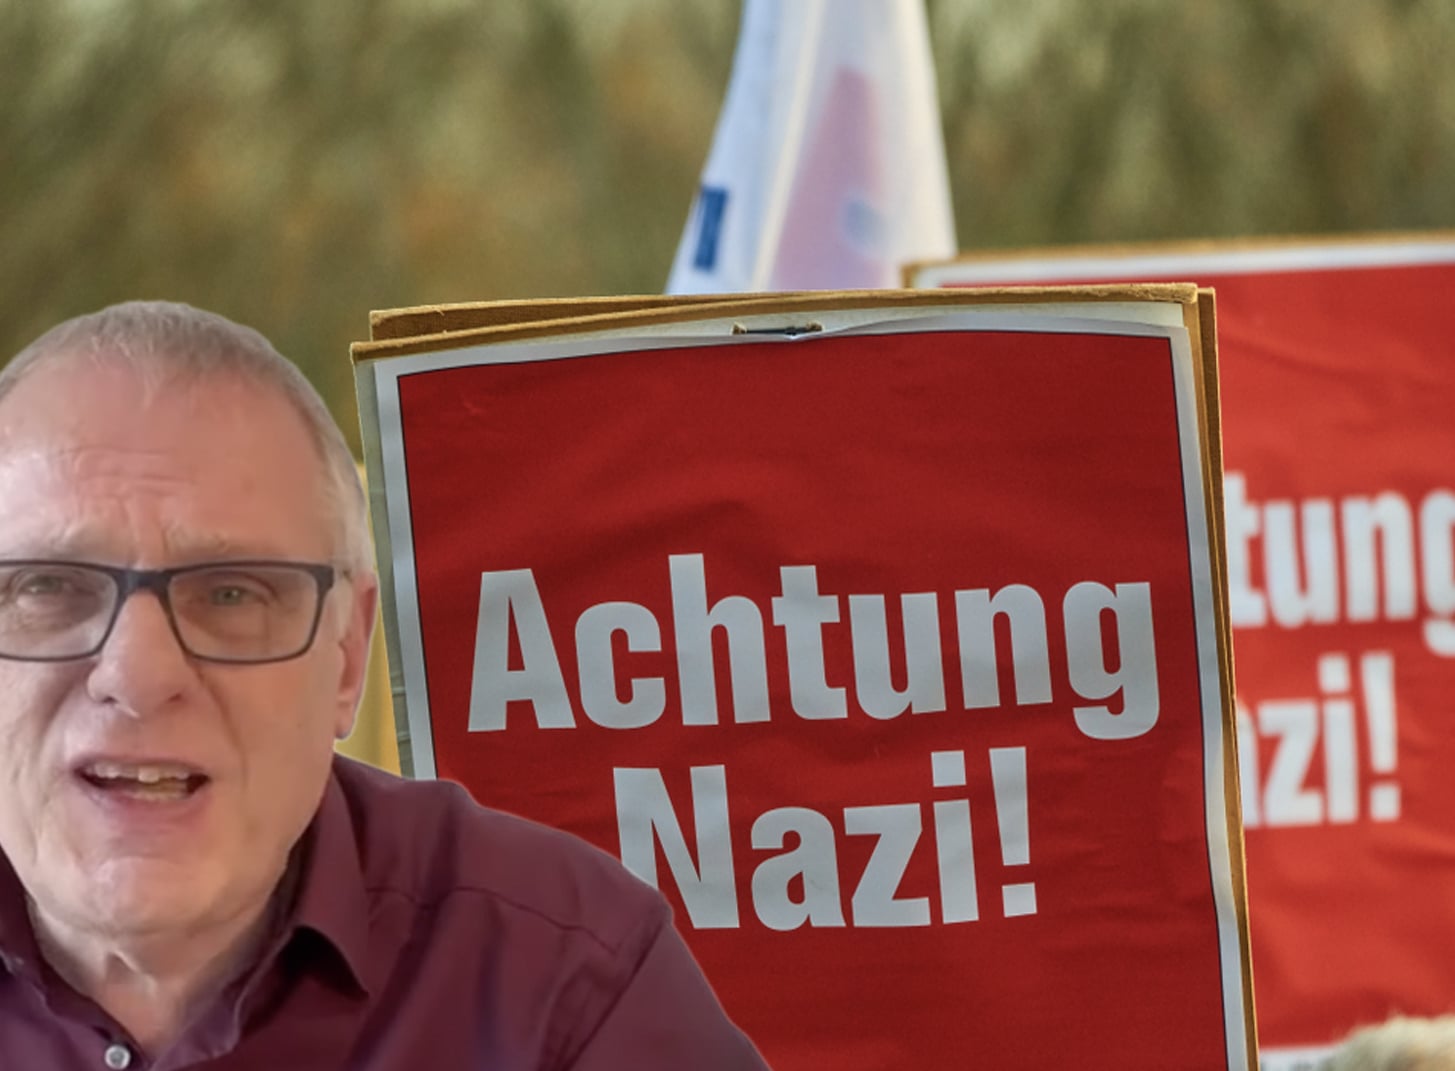 Geuking nazi 2